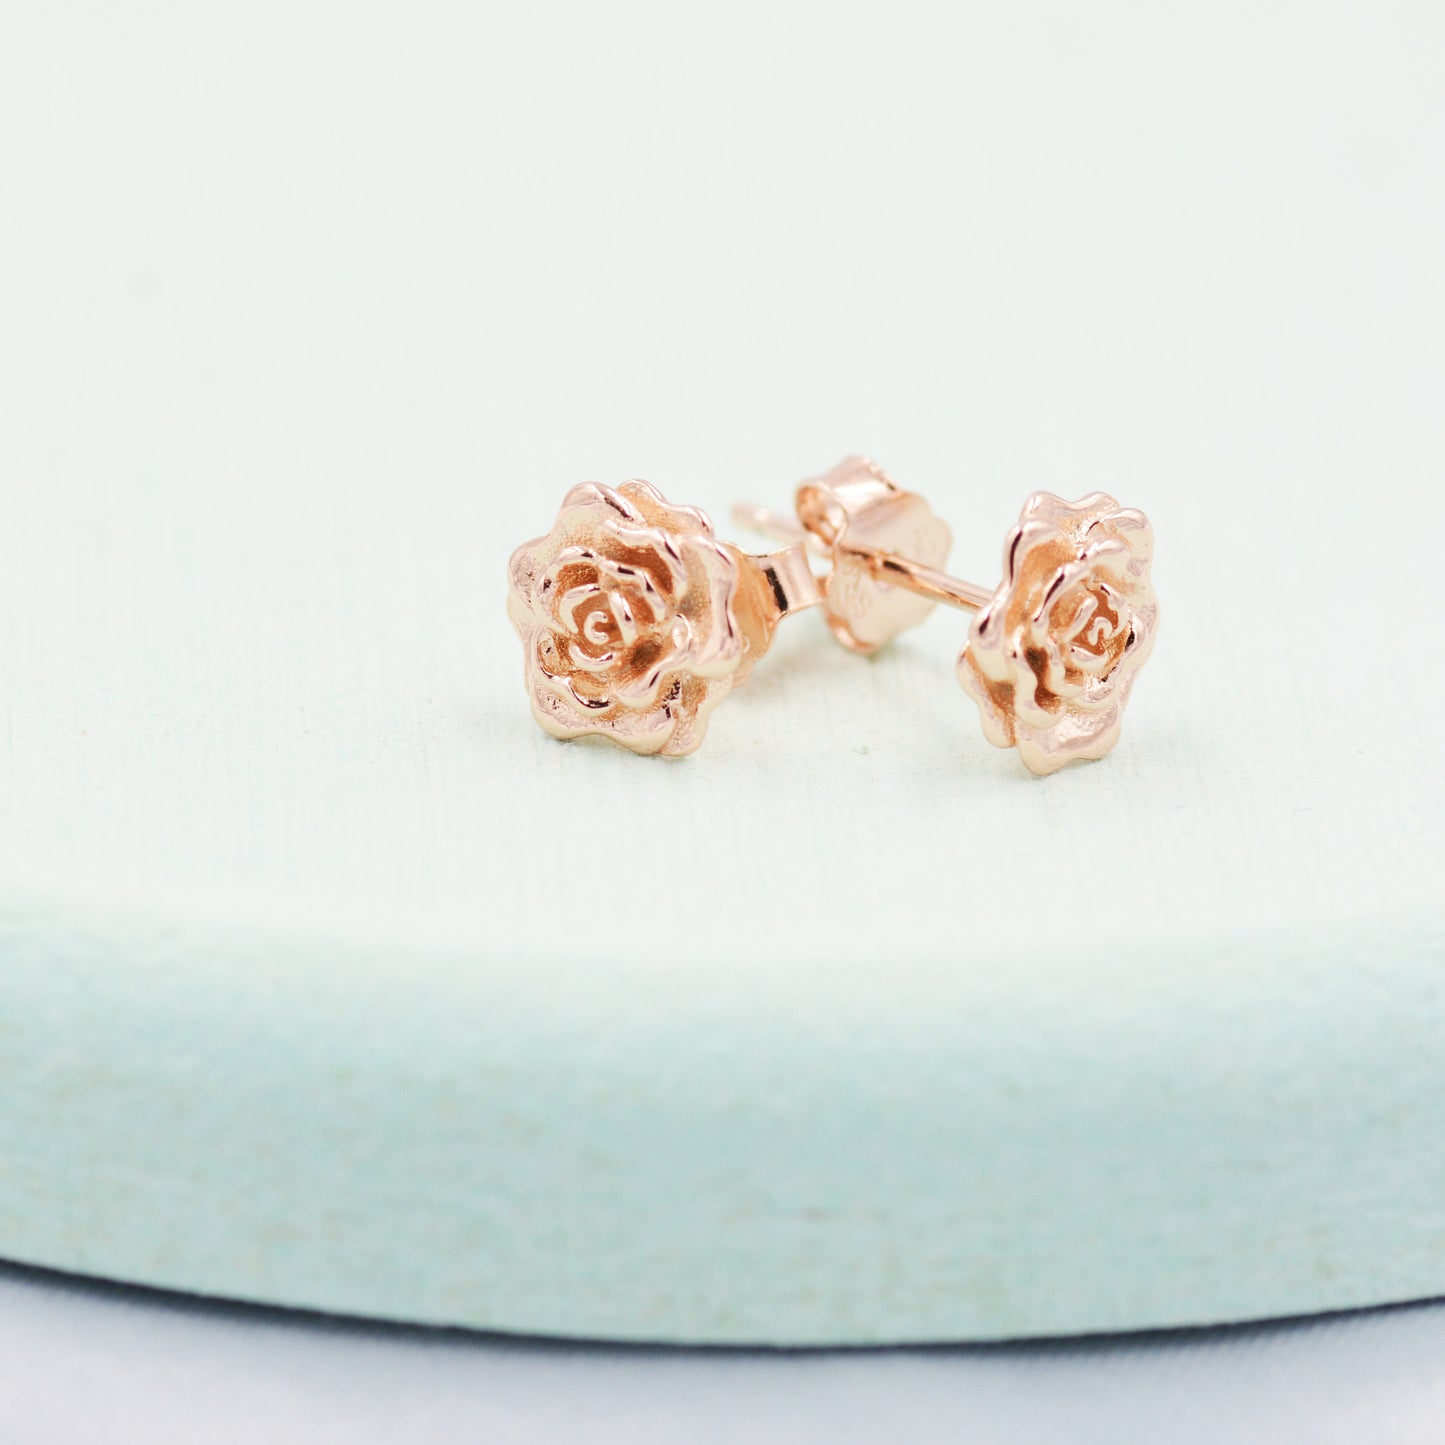 Sterling Silver Rose Earrings, Silver, Gold or Rose Gold, Rose Stud Earrings, Petite Flower Blossom Earrings, Nature Inspired